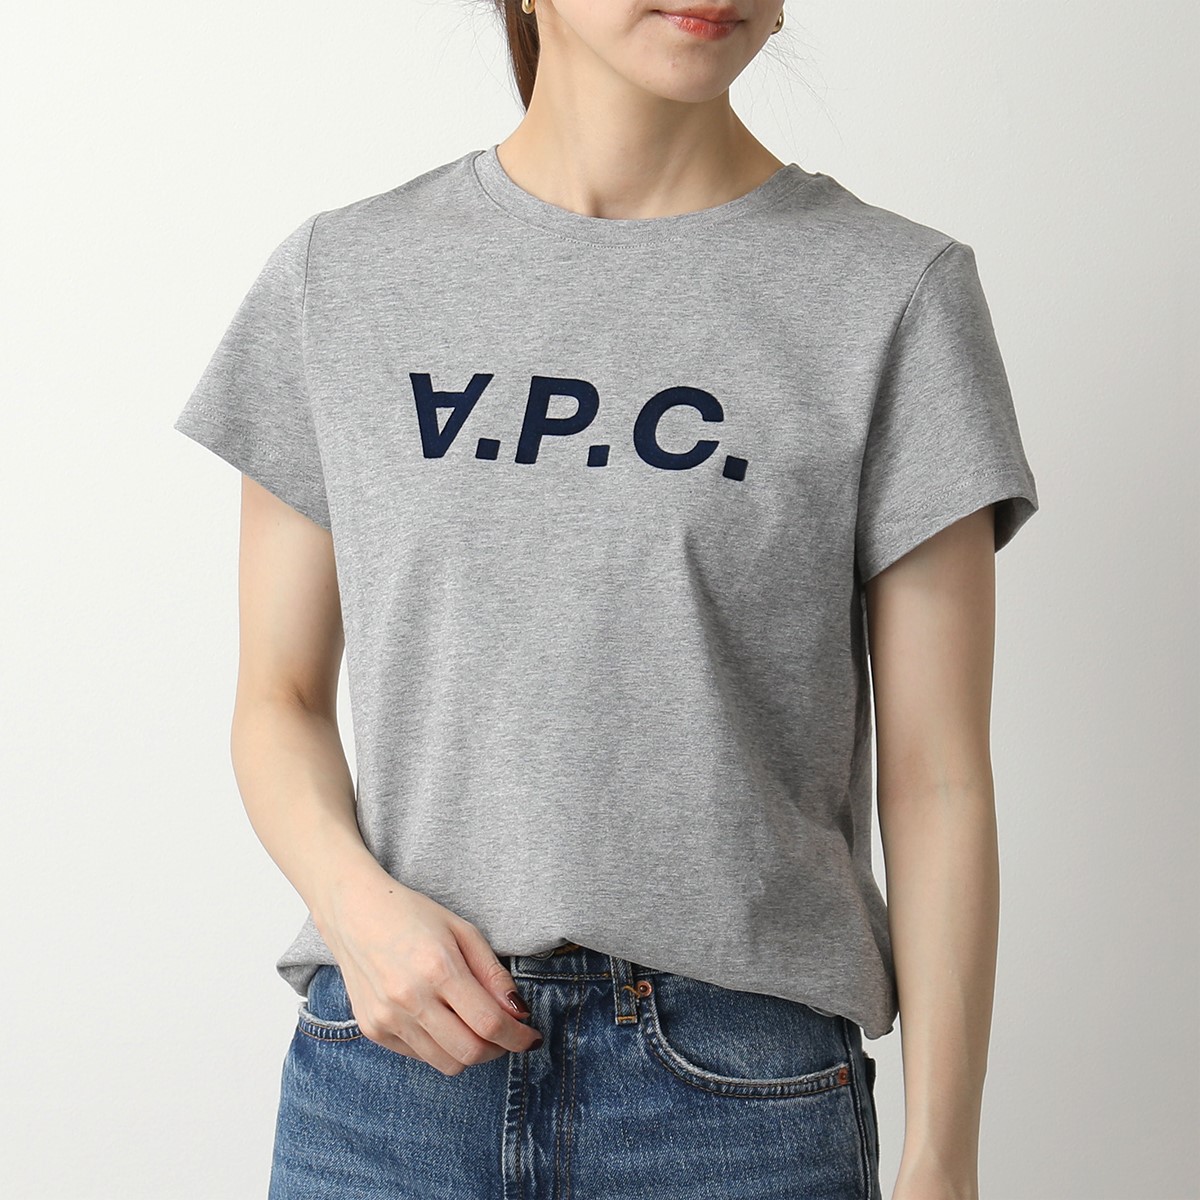 APC A.P.C. アーペーセー VPC Tシャツ COBQX COEZB F26944 レディース クルーネック 半袖 カットソー ロゴT  カラー7色